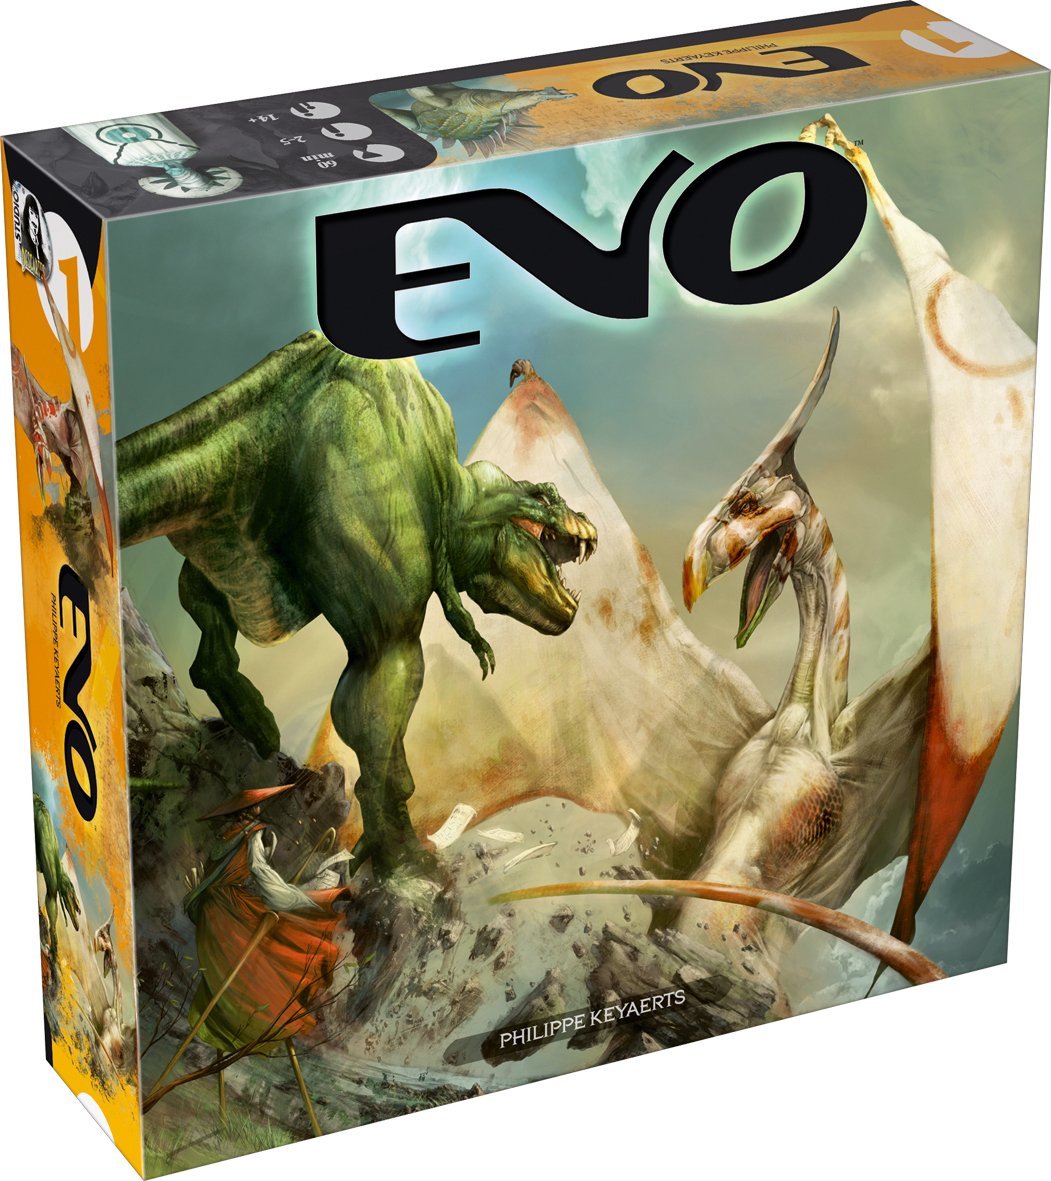 Evo - Dinospiel, Dinosaurieraufbauspiel, Strategiespiel von Philippe Keyaerts